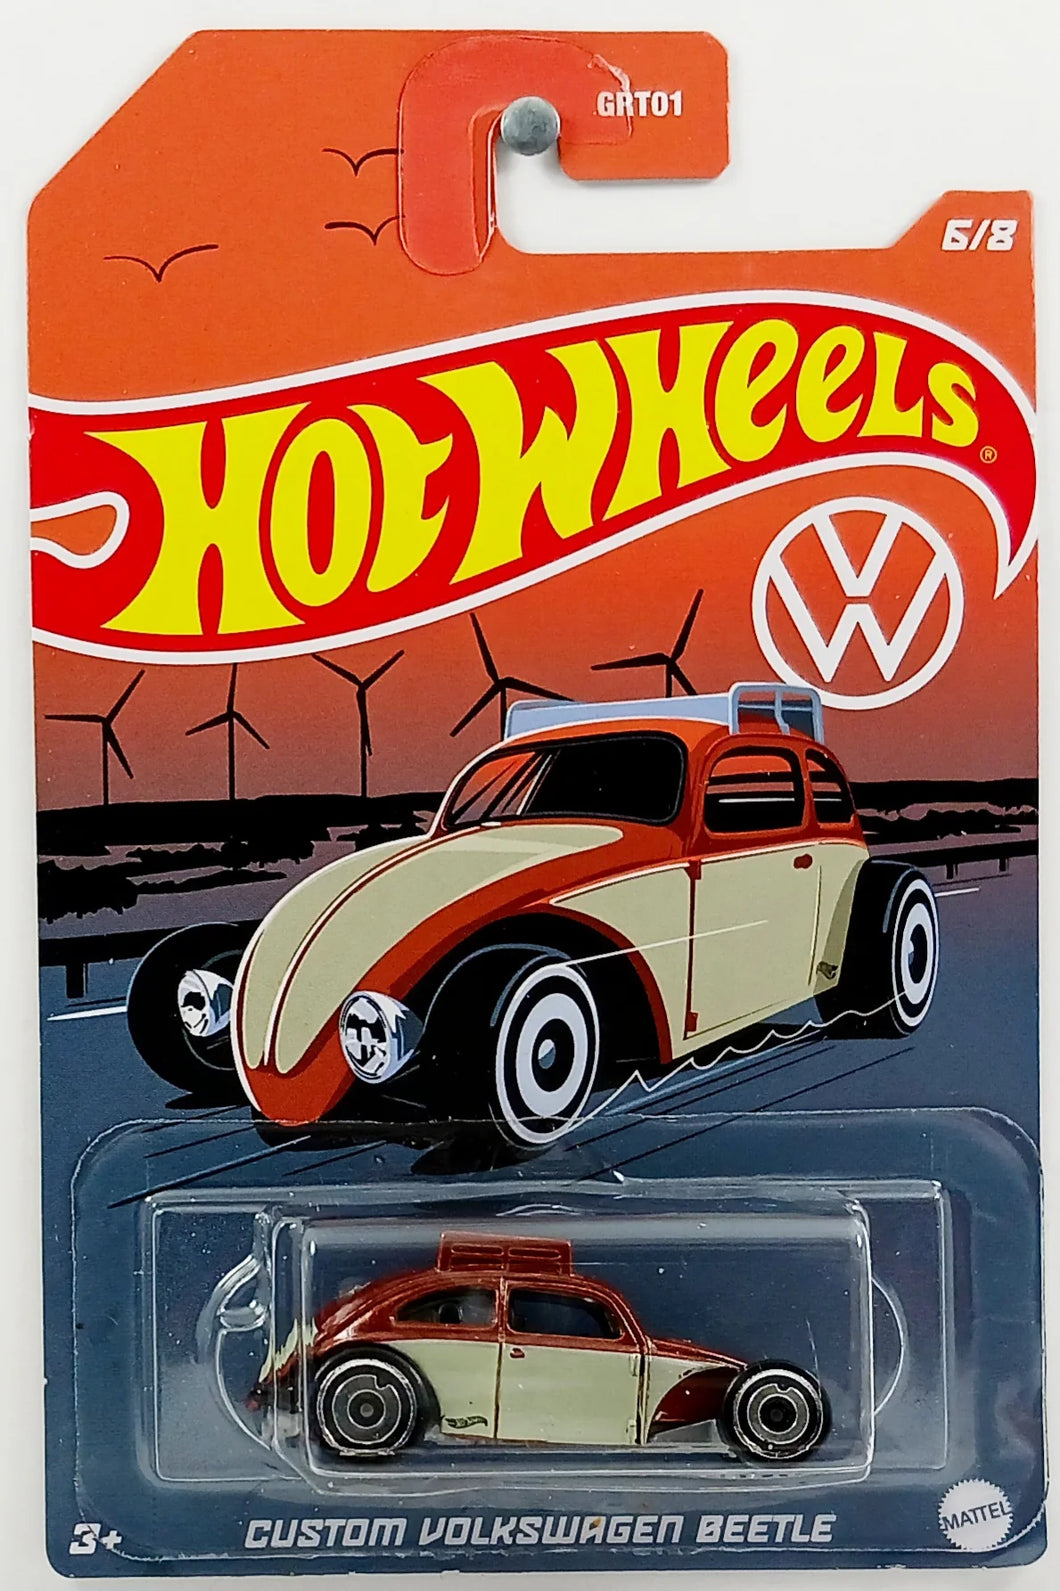 Hot Wheels Volkswagen Series 6/8 Custom Volkswagen Beetle - Walmart Exclusive